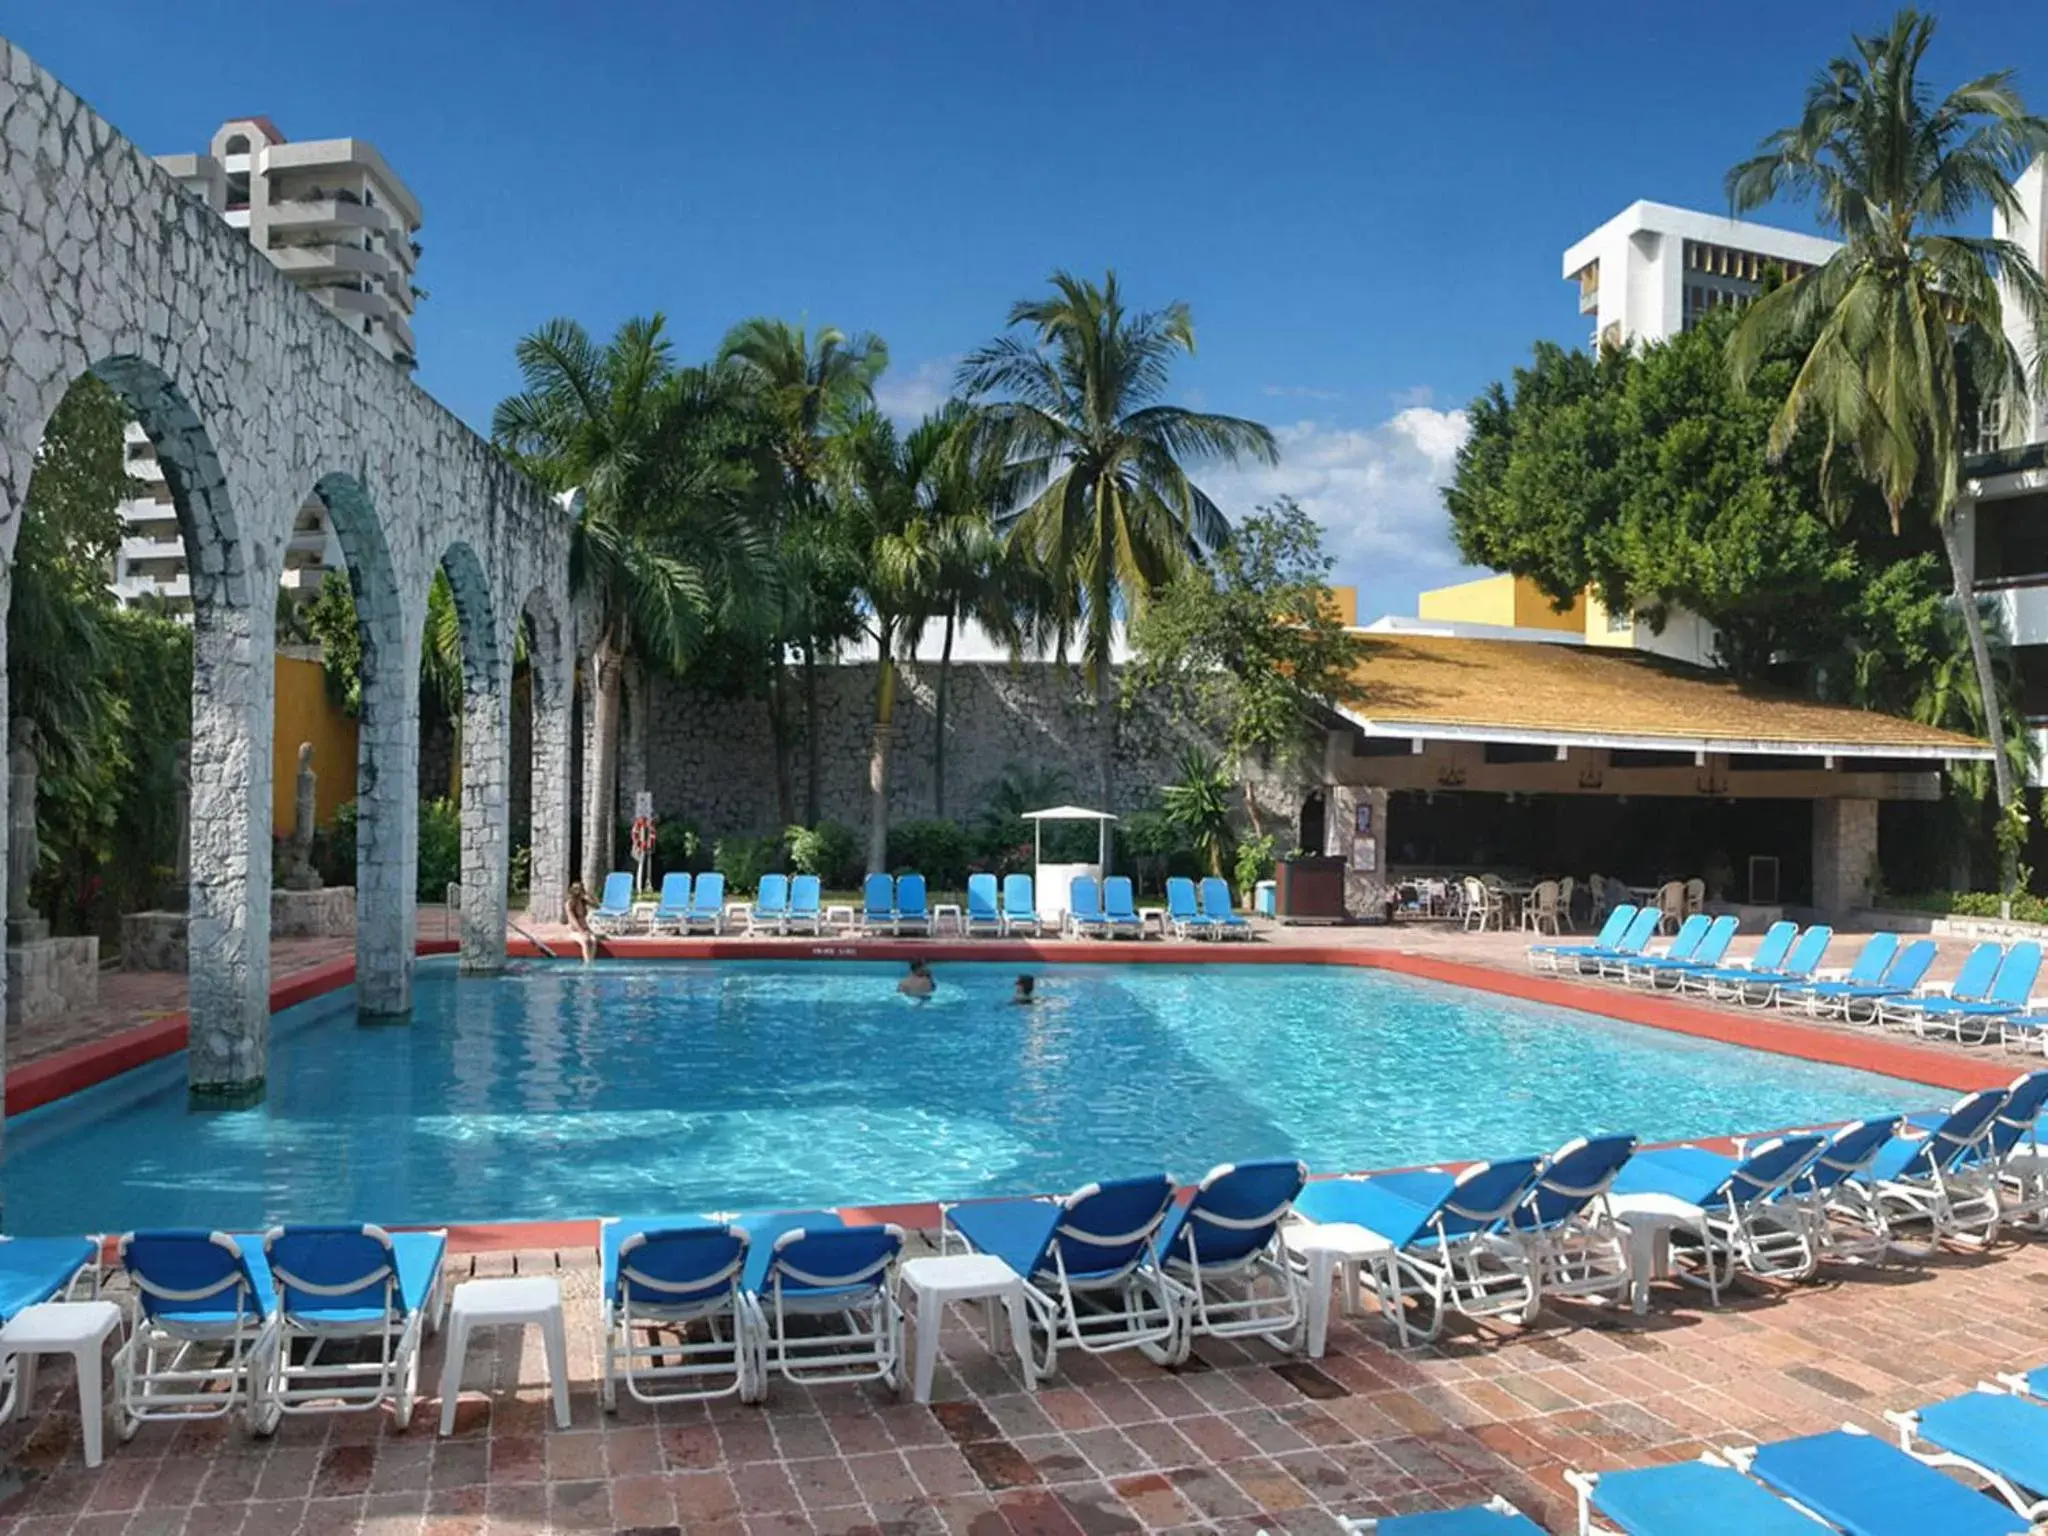 Swimming Pool in El Cid Granada Hotel & Country Club